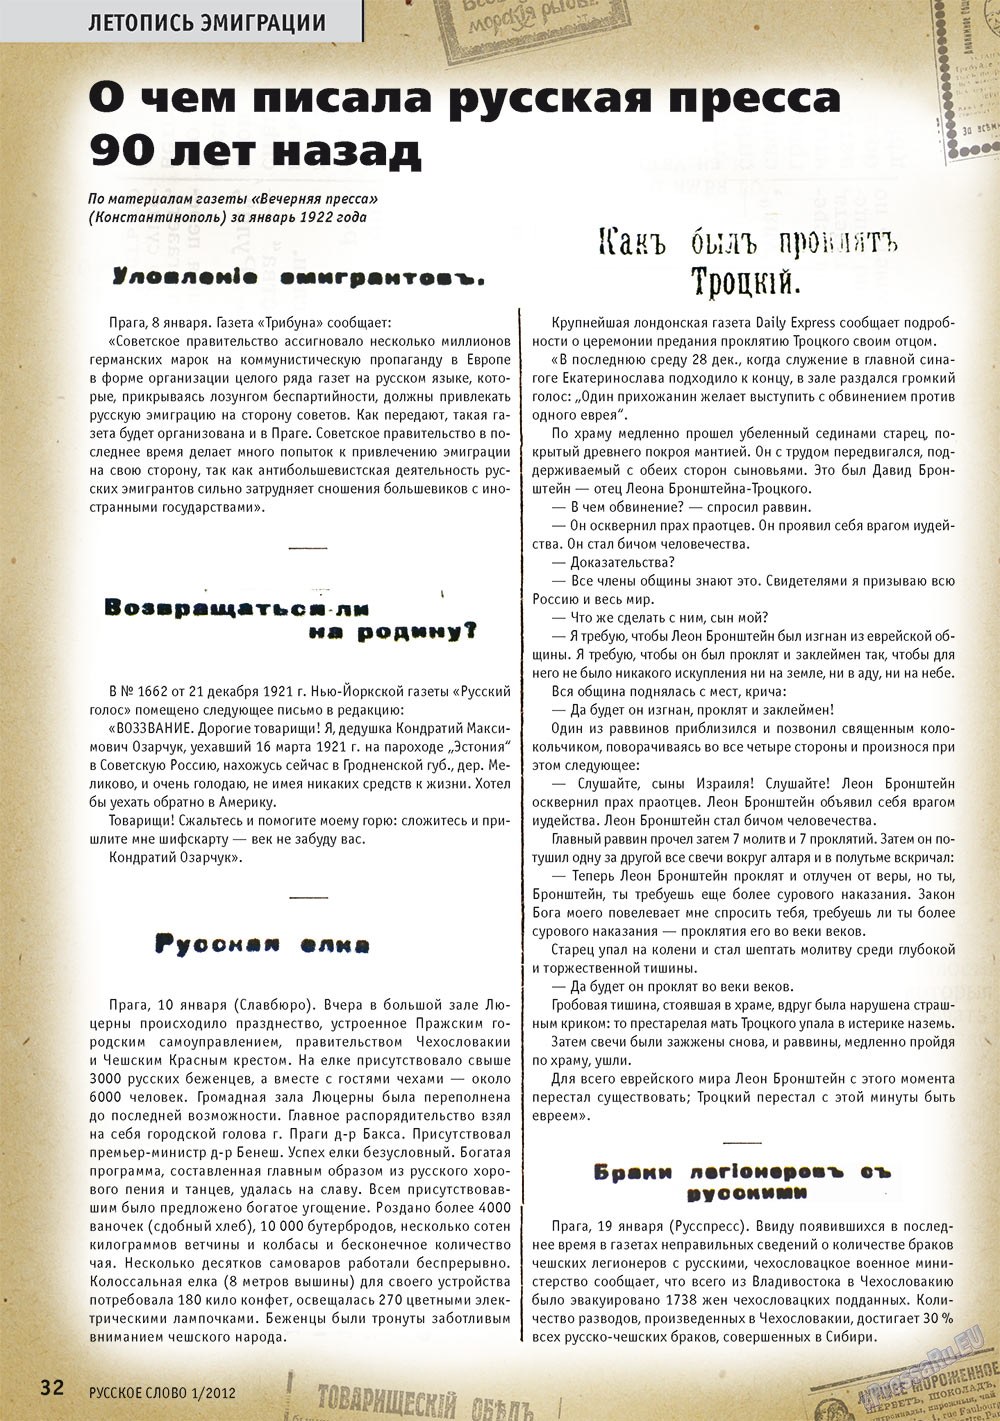 Русское слово, журнал. 2012 №1 стр.34